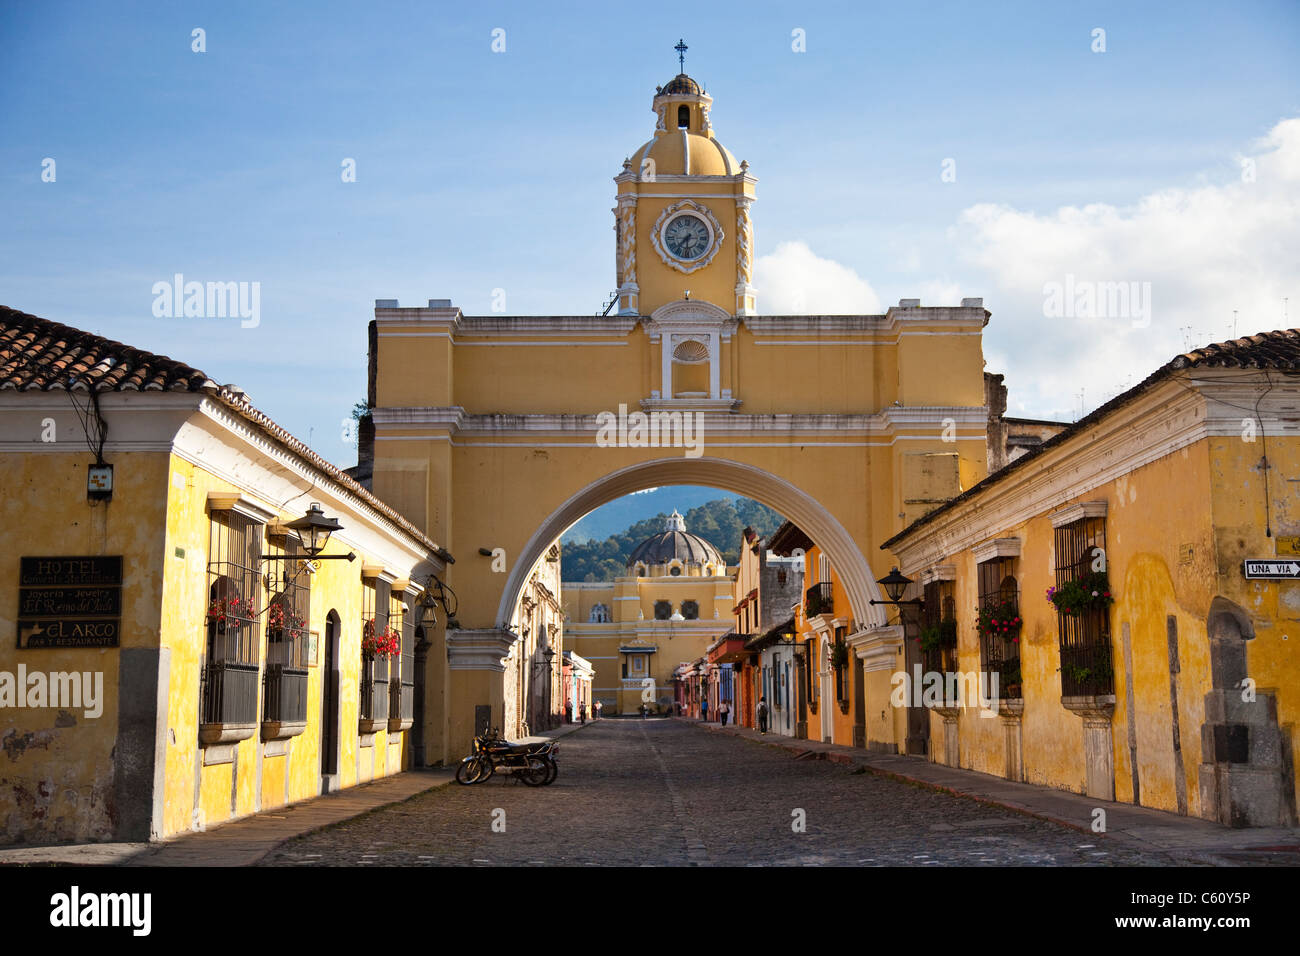 Nuestra Señora de la Merced, Arco de Santa Catalina, Calle del Arco, Antigua, Guatemala Foto de stock